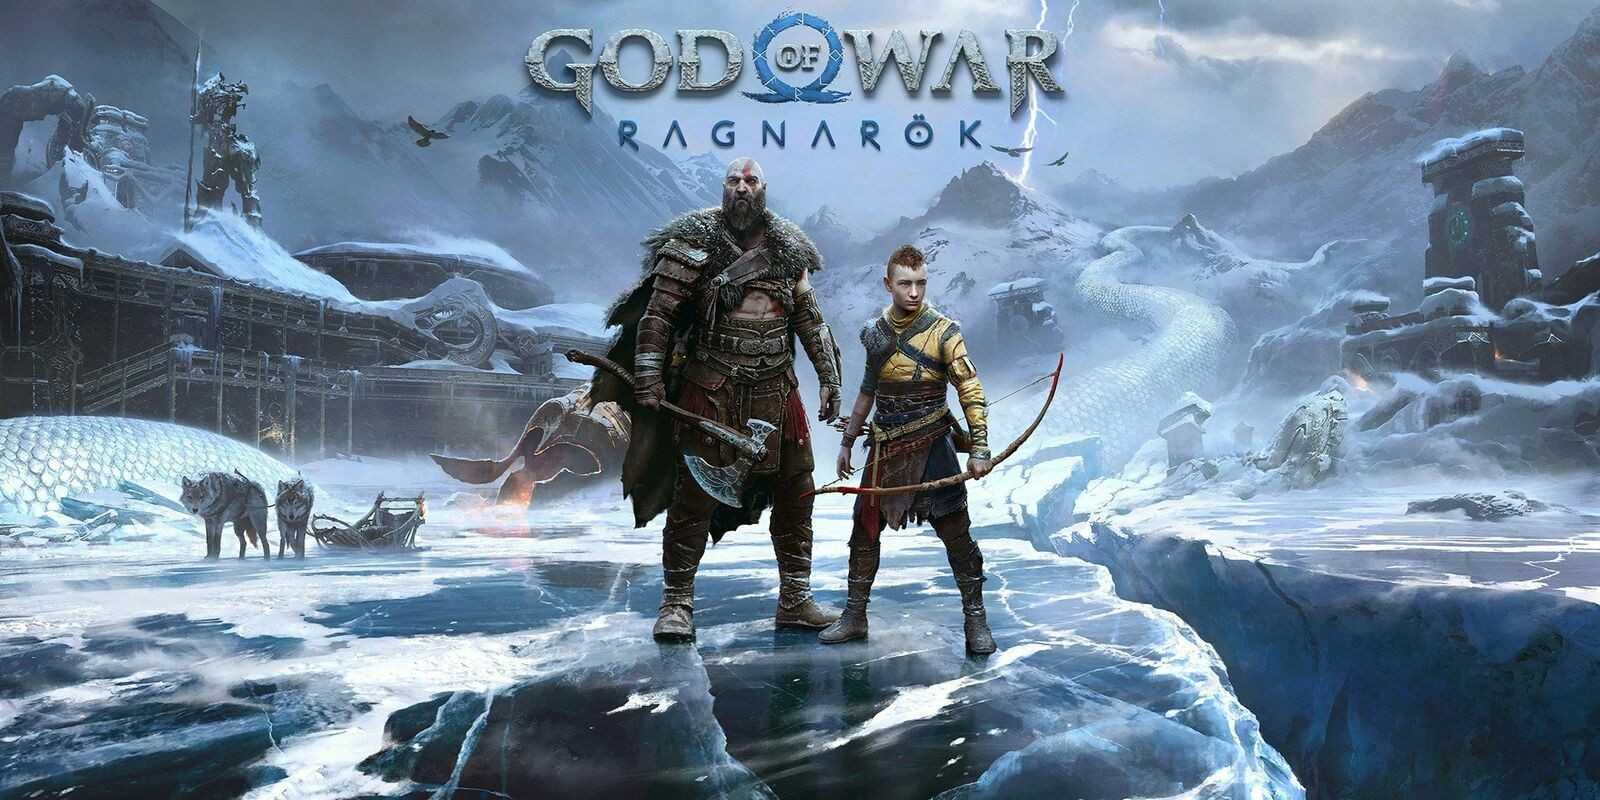 Kratos-skuespiller Christopher Judges lønn kan opprøre fans til tross for God of War: Ragnarok selger over 11 millioner eksemplarer over hele verden